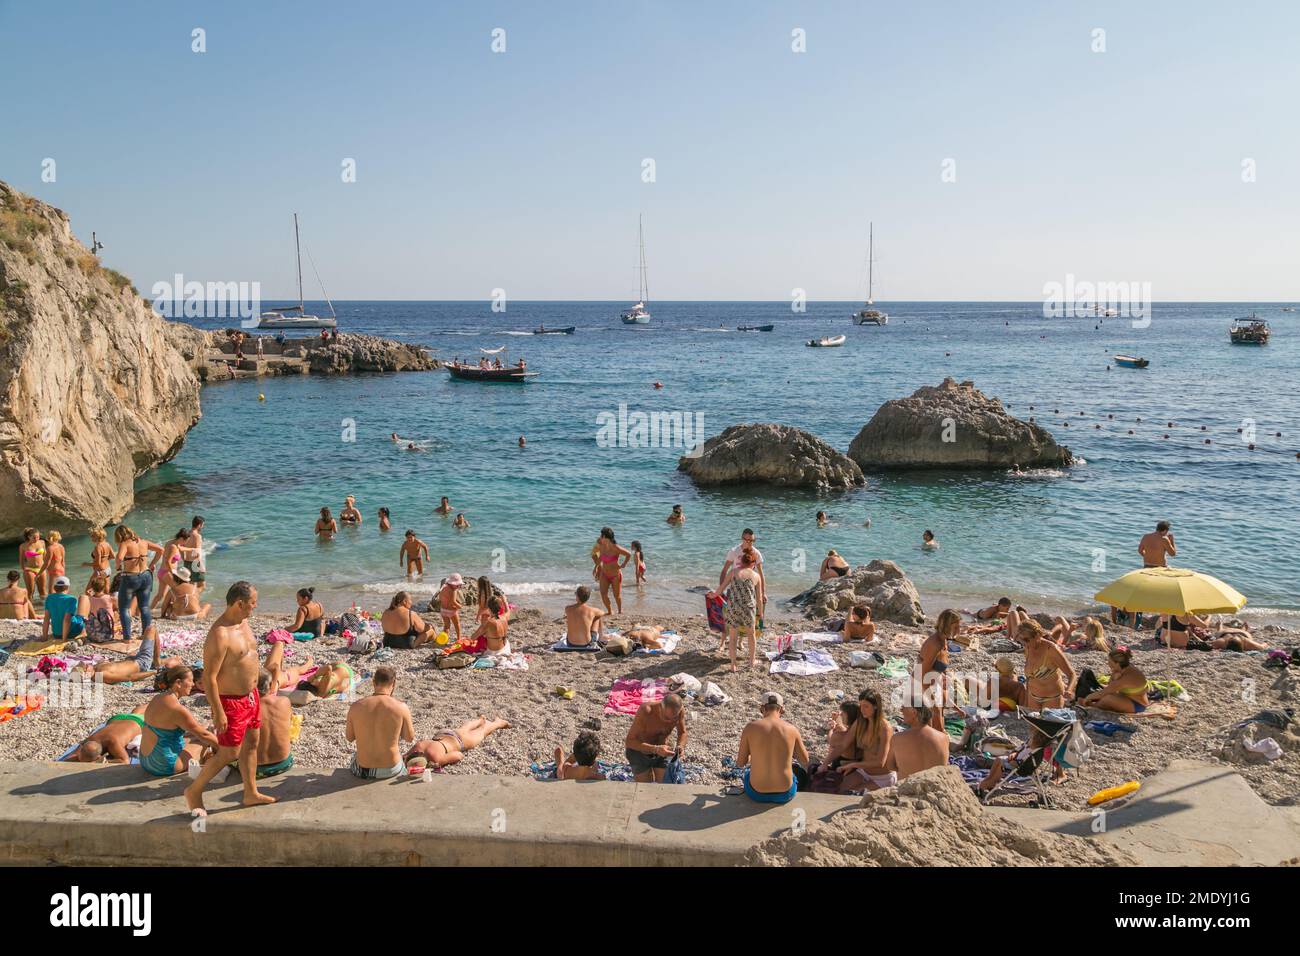 L'été, les gens nagent et se bronzent sur la plage de Capri, la baie de Naples, la mer Tyrrhénienne, Italie. Banque D'Images